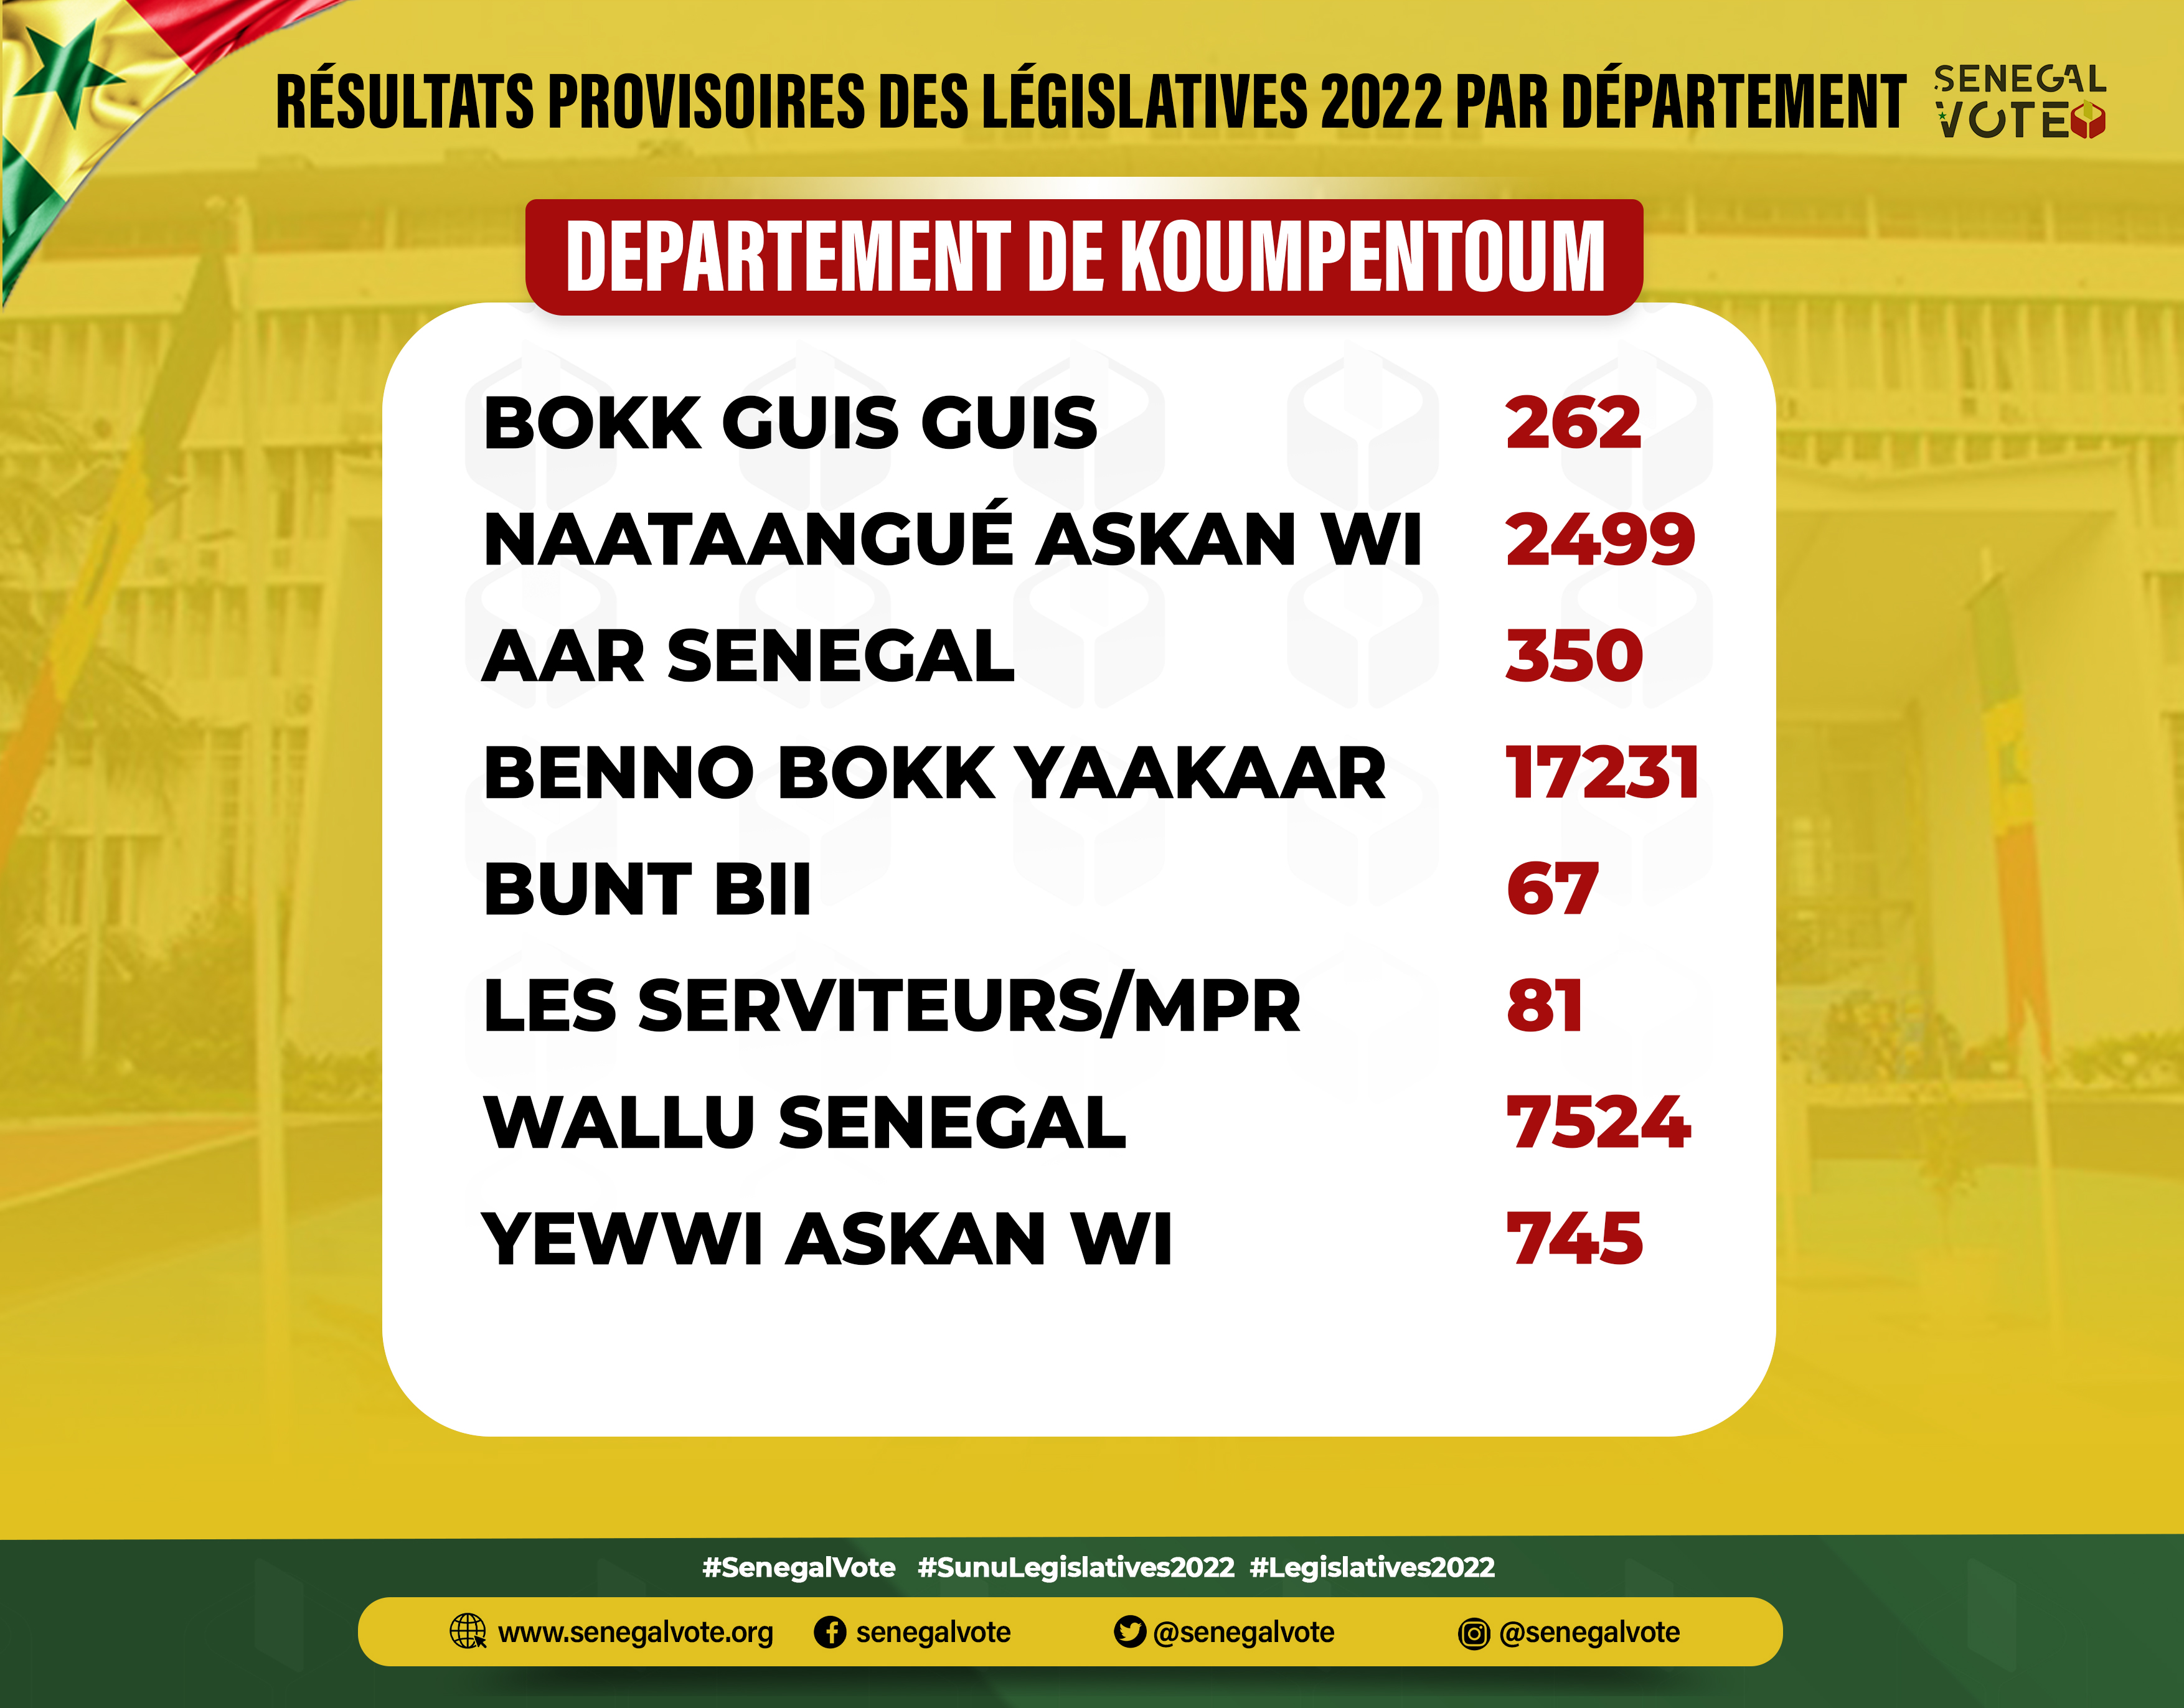 #Législatives2022:  En images, les résultats provisoires par département (#Senegalvote)